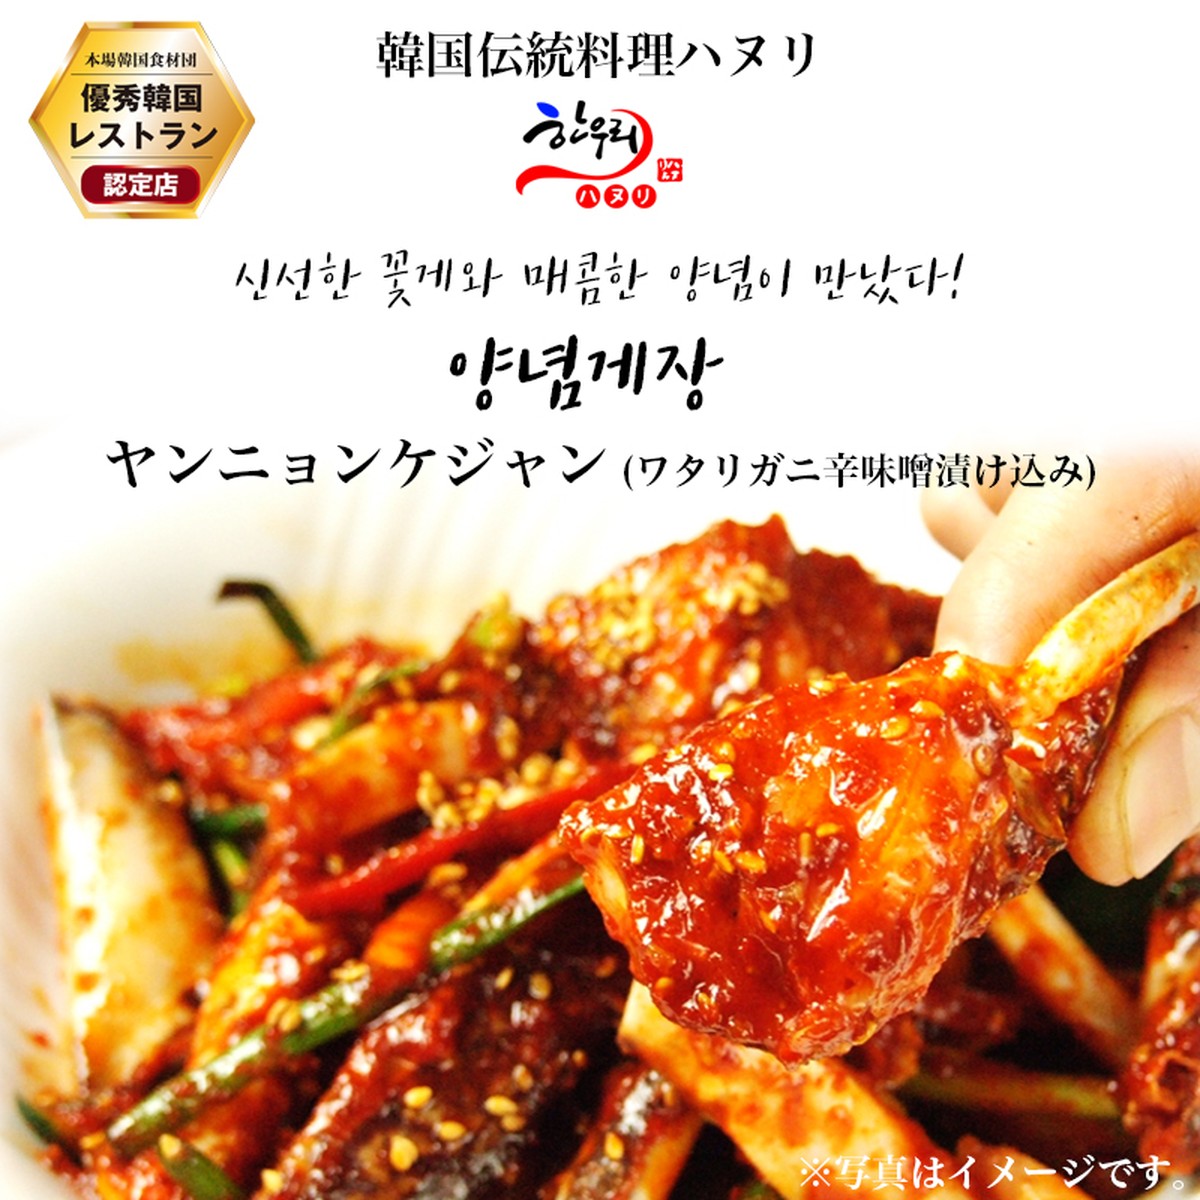 ヤンニョンケジャン ワタリガニ辛味噌漬け込み 300g 韓国政府の 優秀韓食レストラン 認定店の韓国伝統料理 ハヌリ